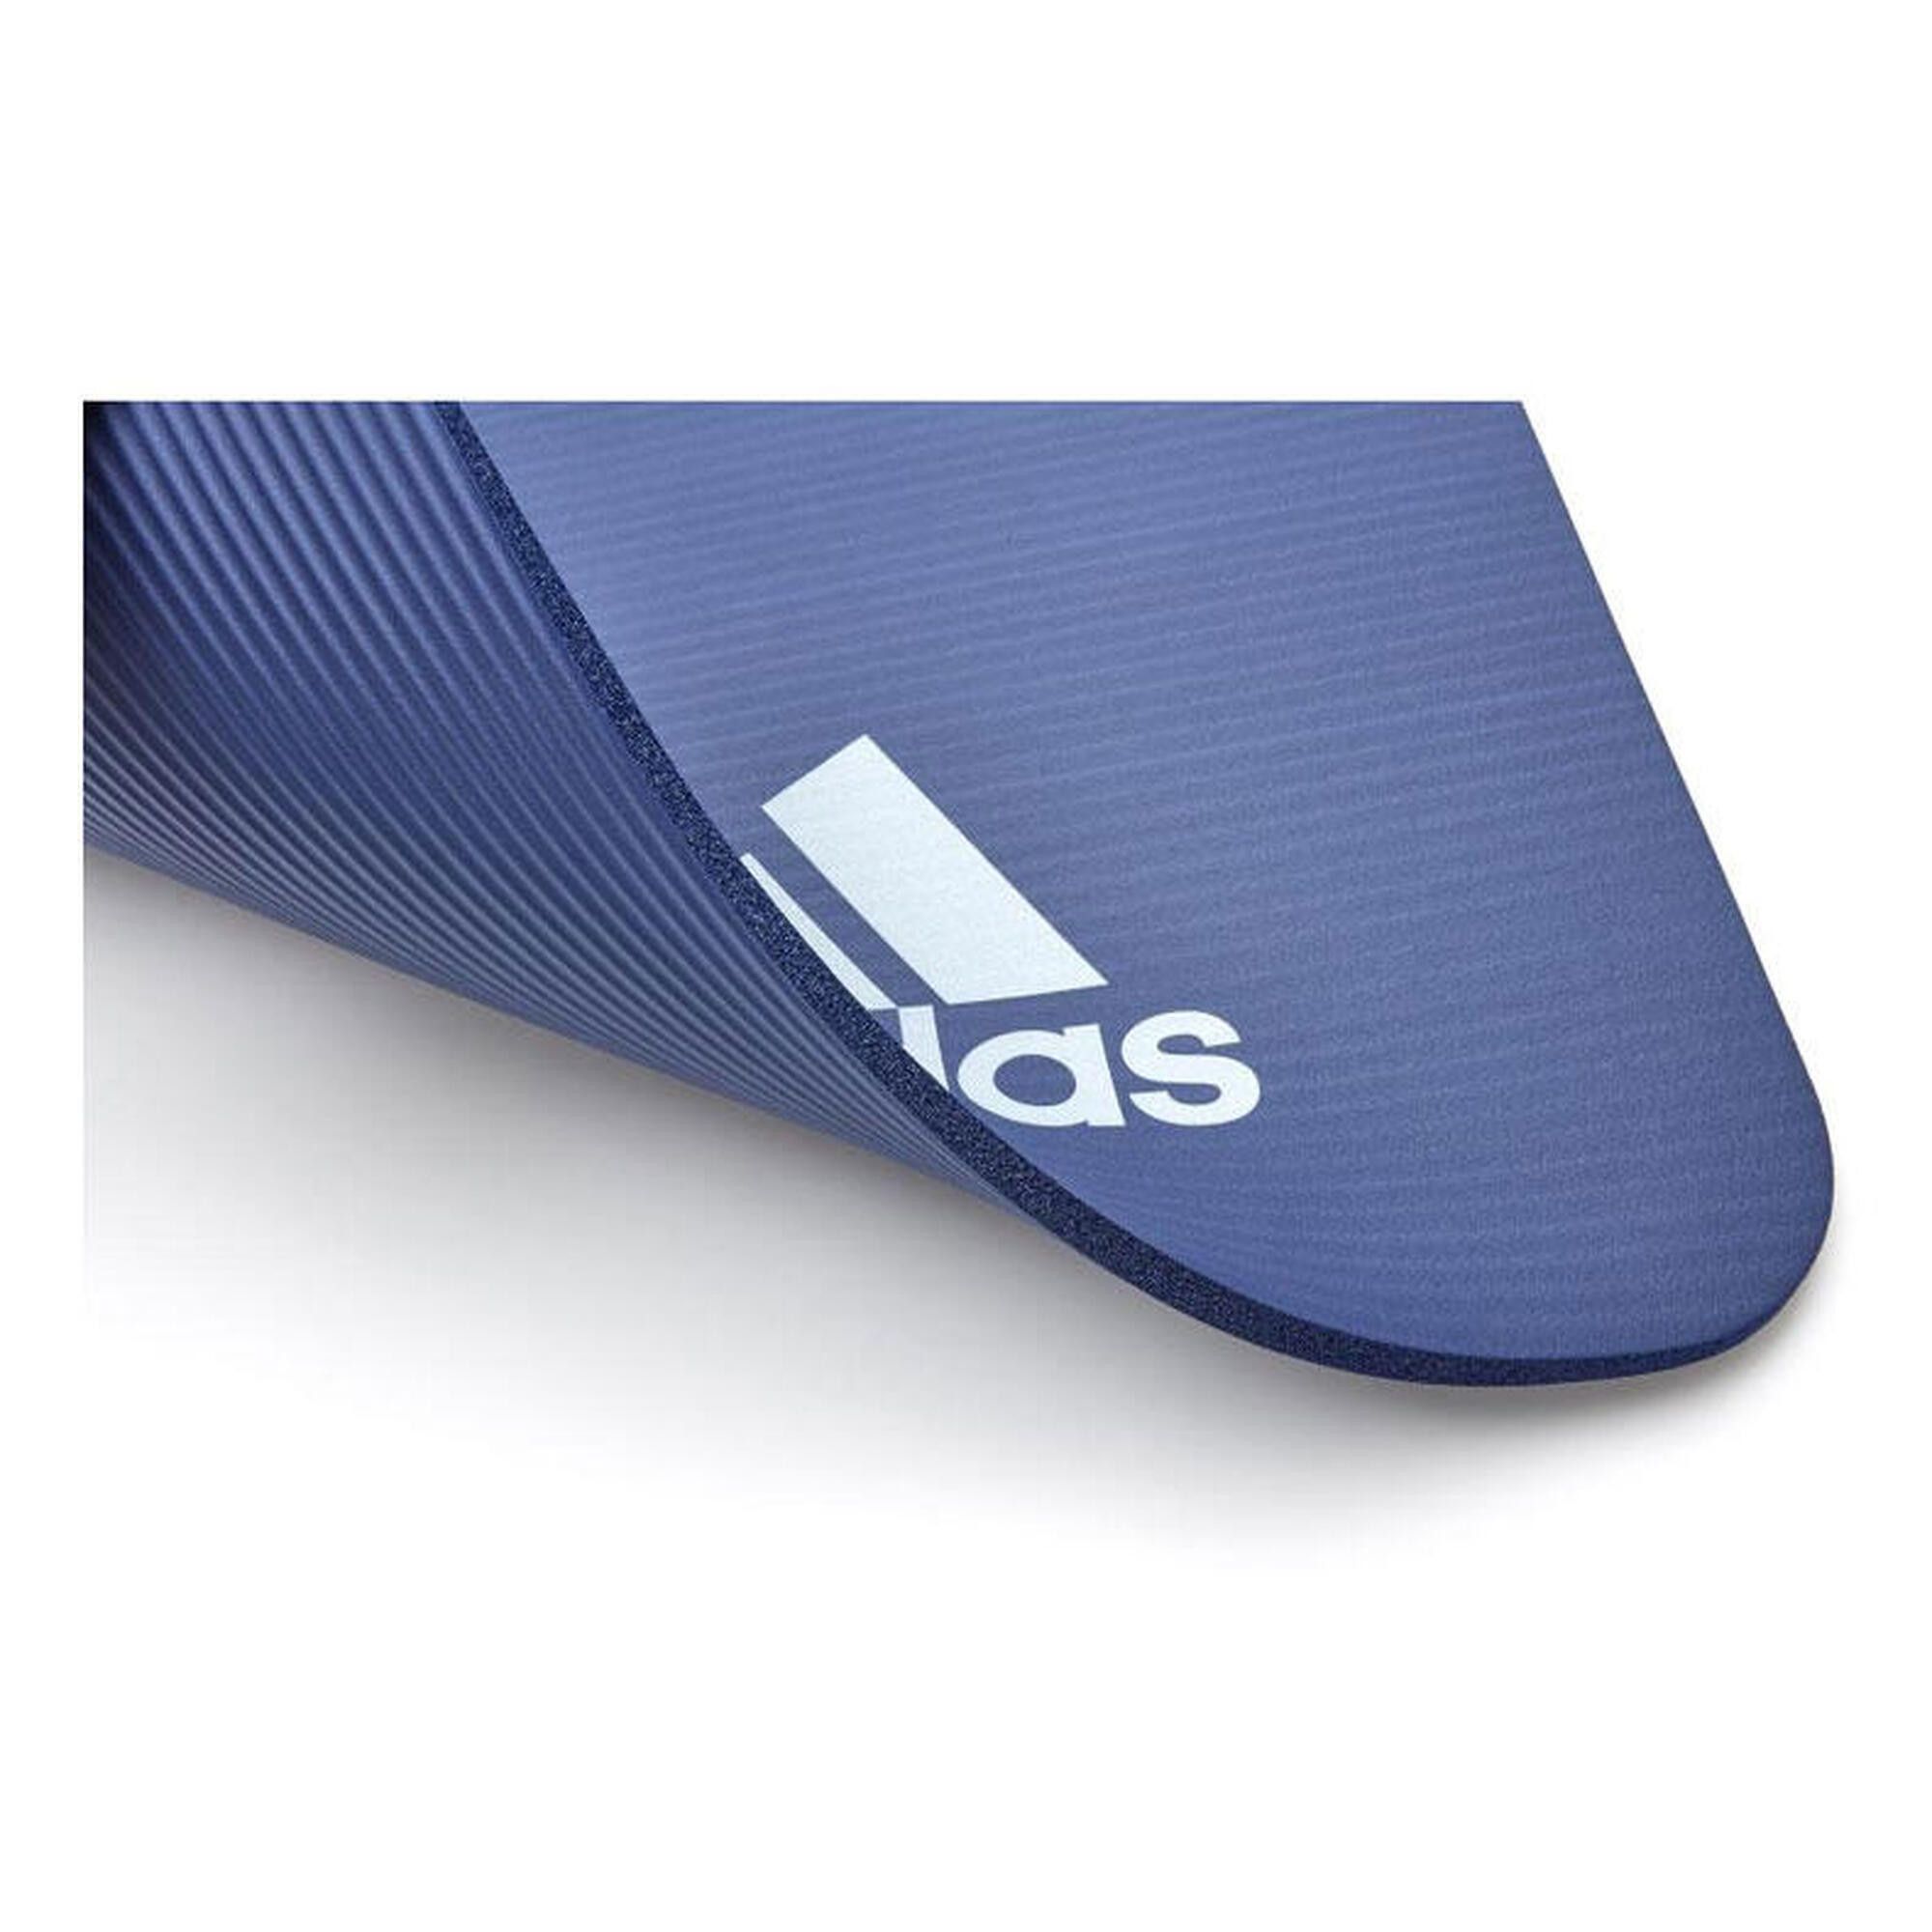 Tapis de fitness Adidas - 10mm - Bleu